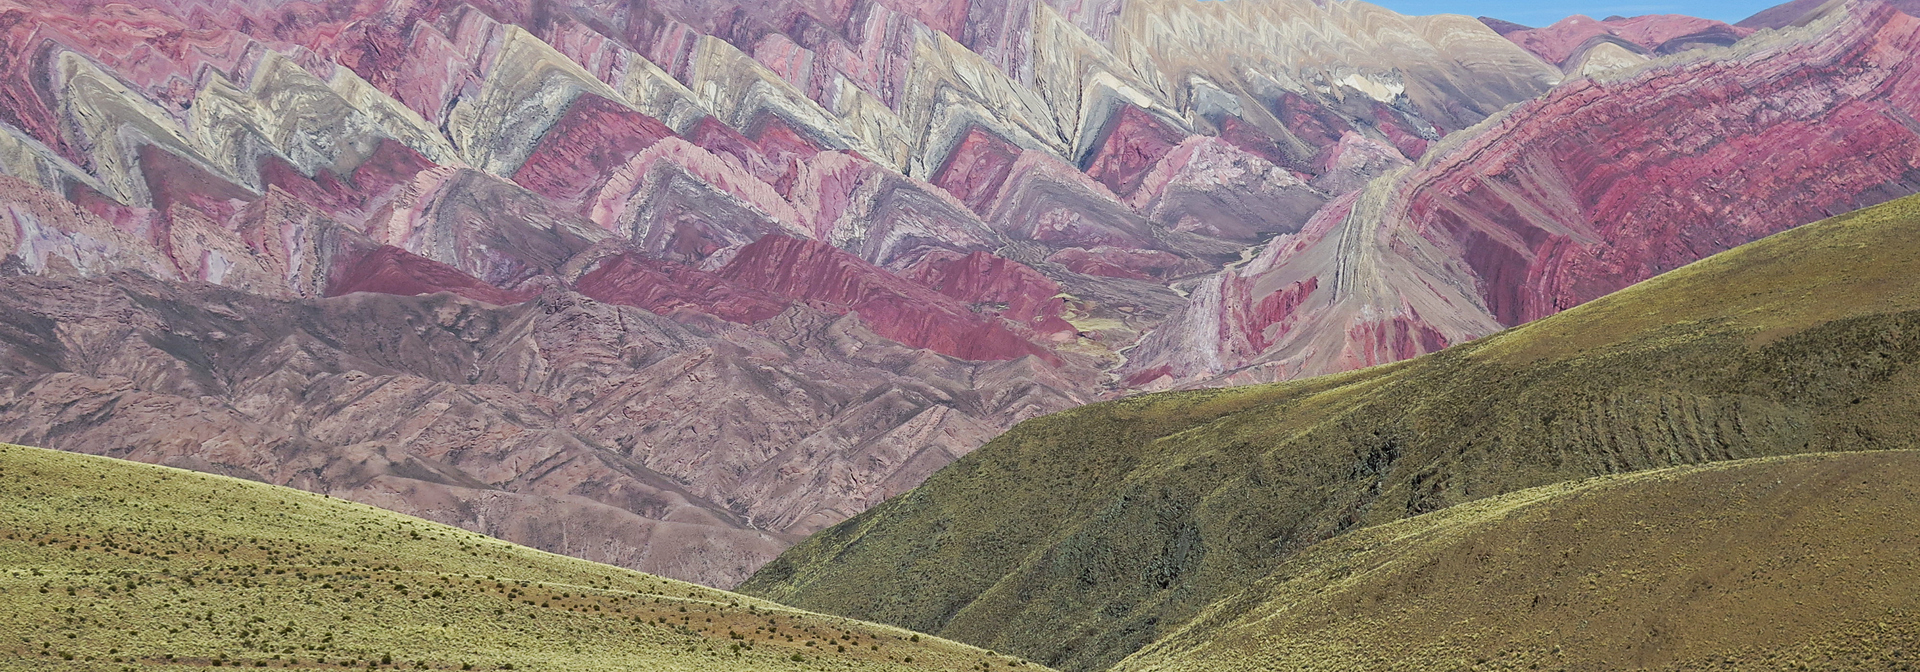 argentina - argentina 14 farvede bjerg_01